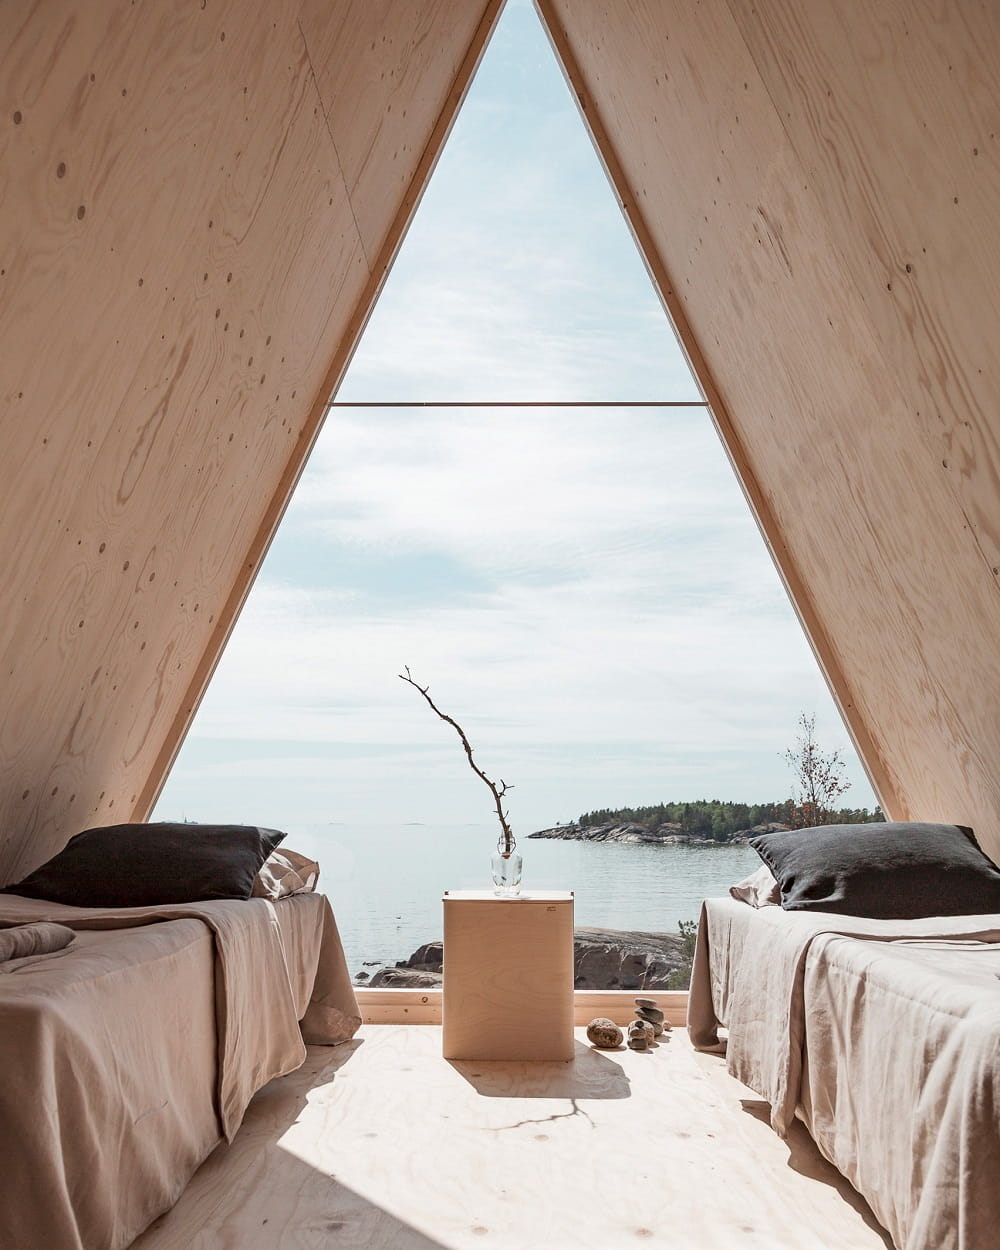 The Nolla Cabin by Robin Falck, Finland